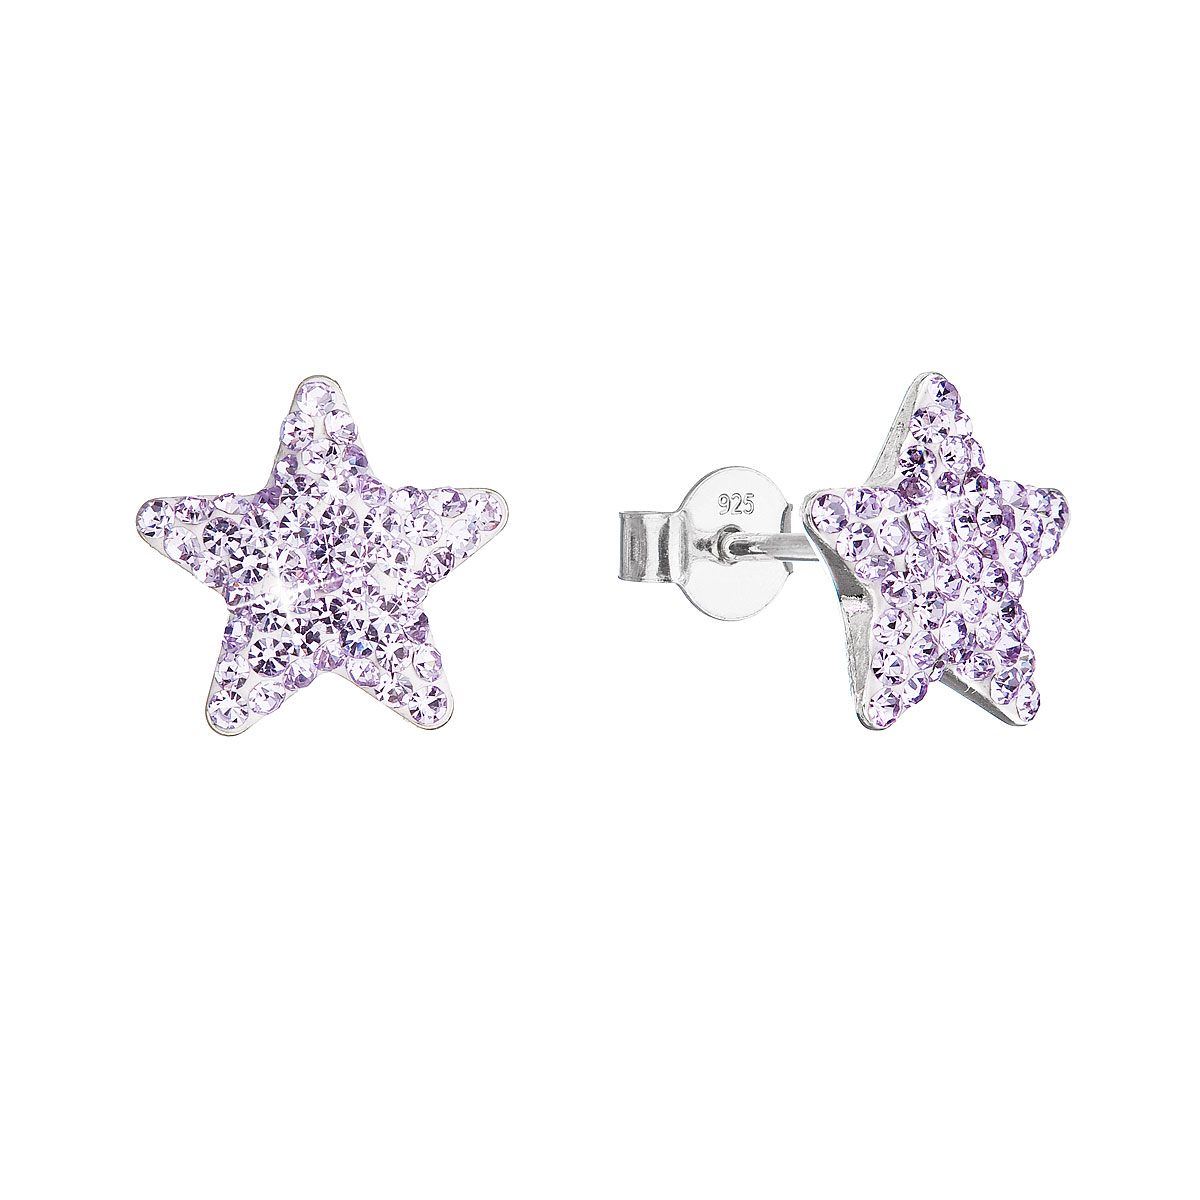 Strieborné náušnice kôstky s Preciosa kryštálmi fialove hviezdičky 31312.3 violet